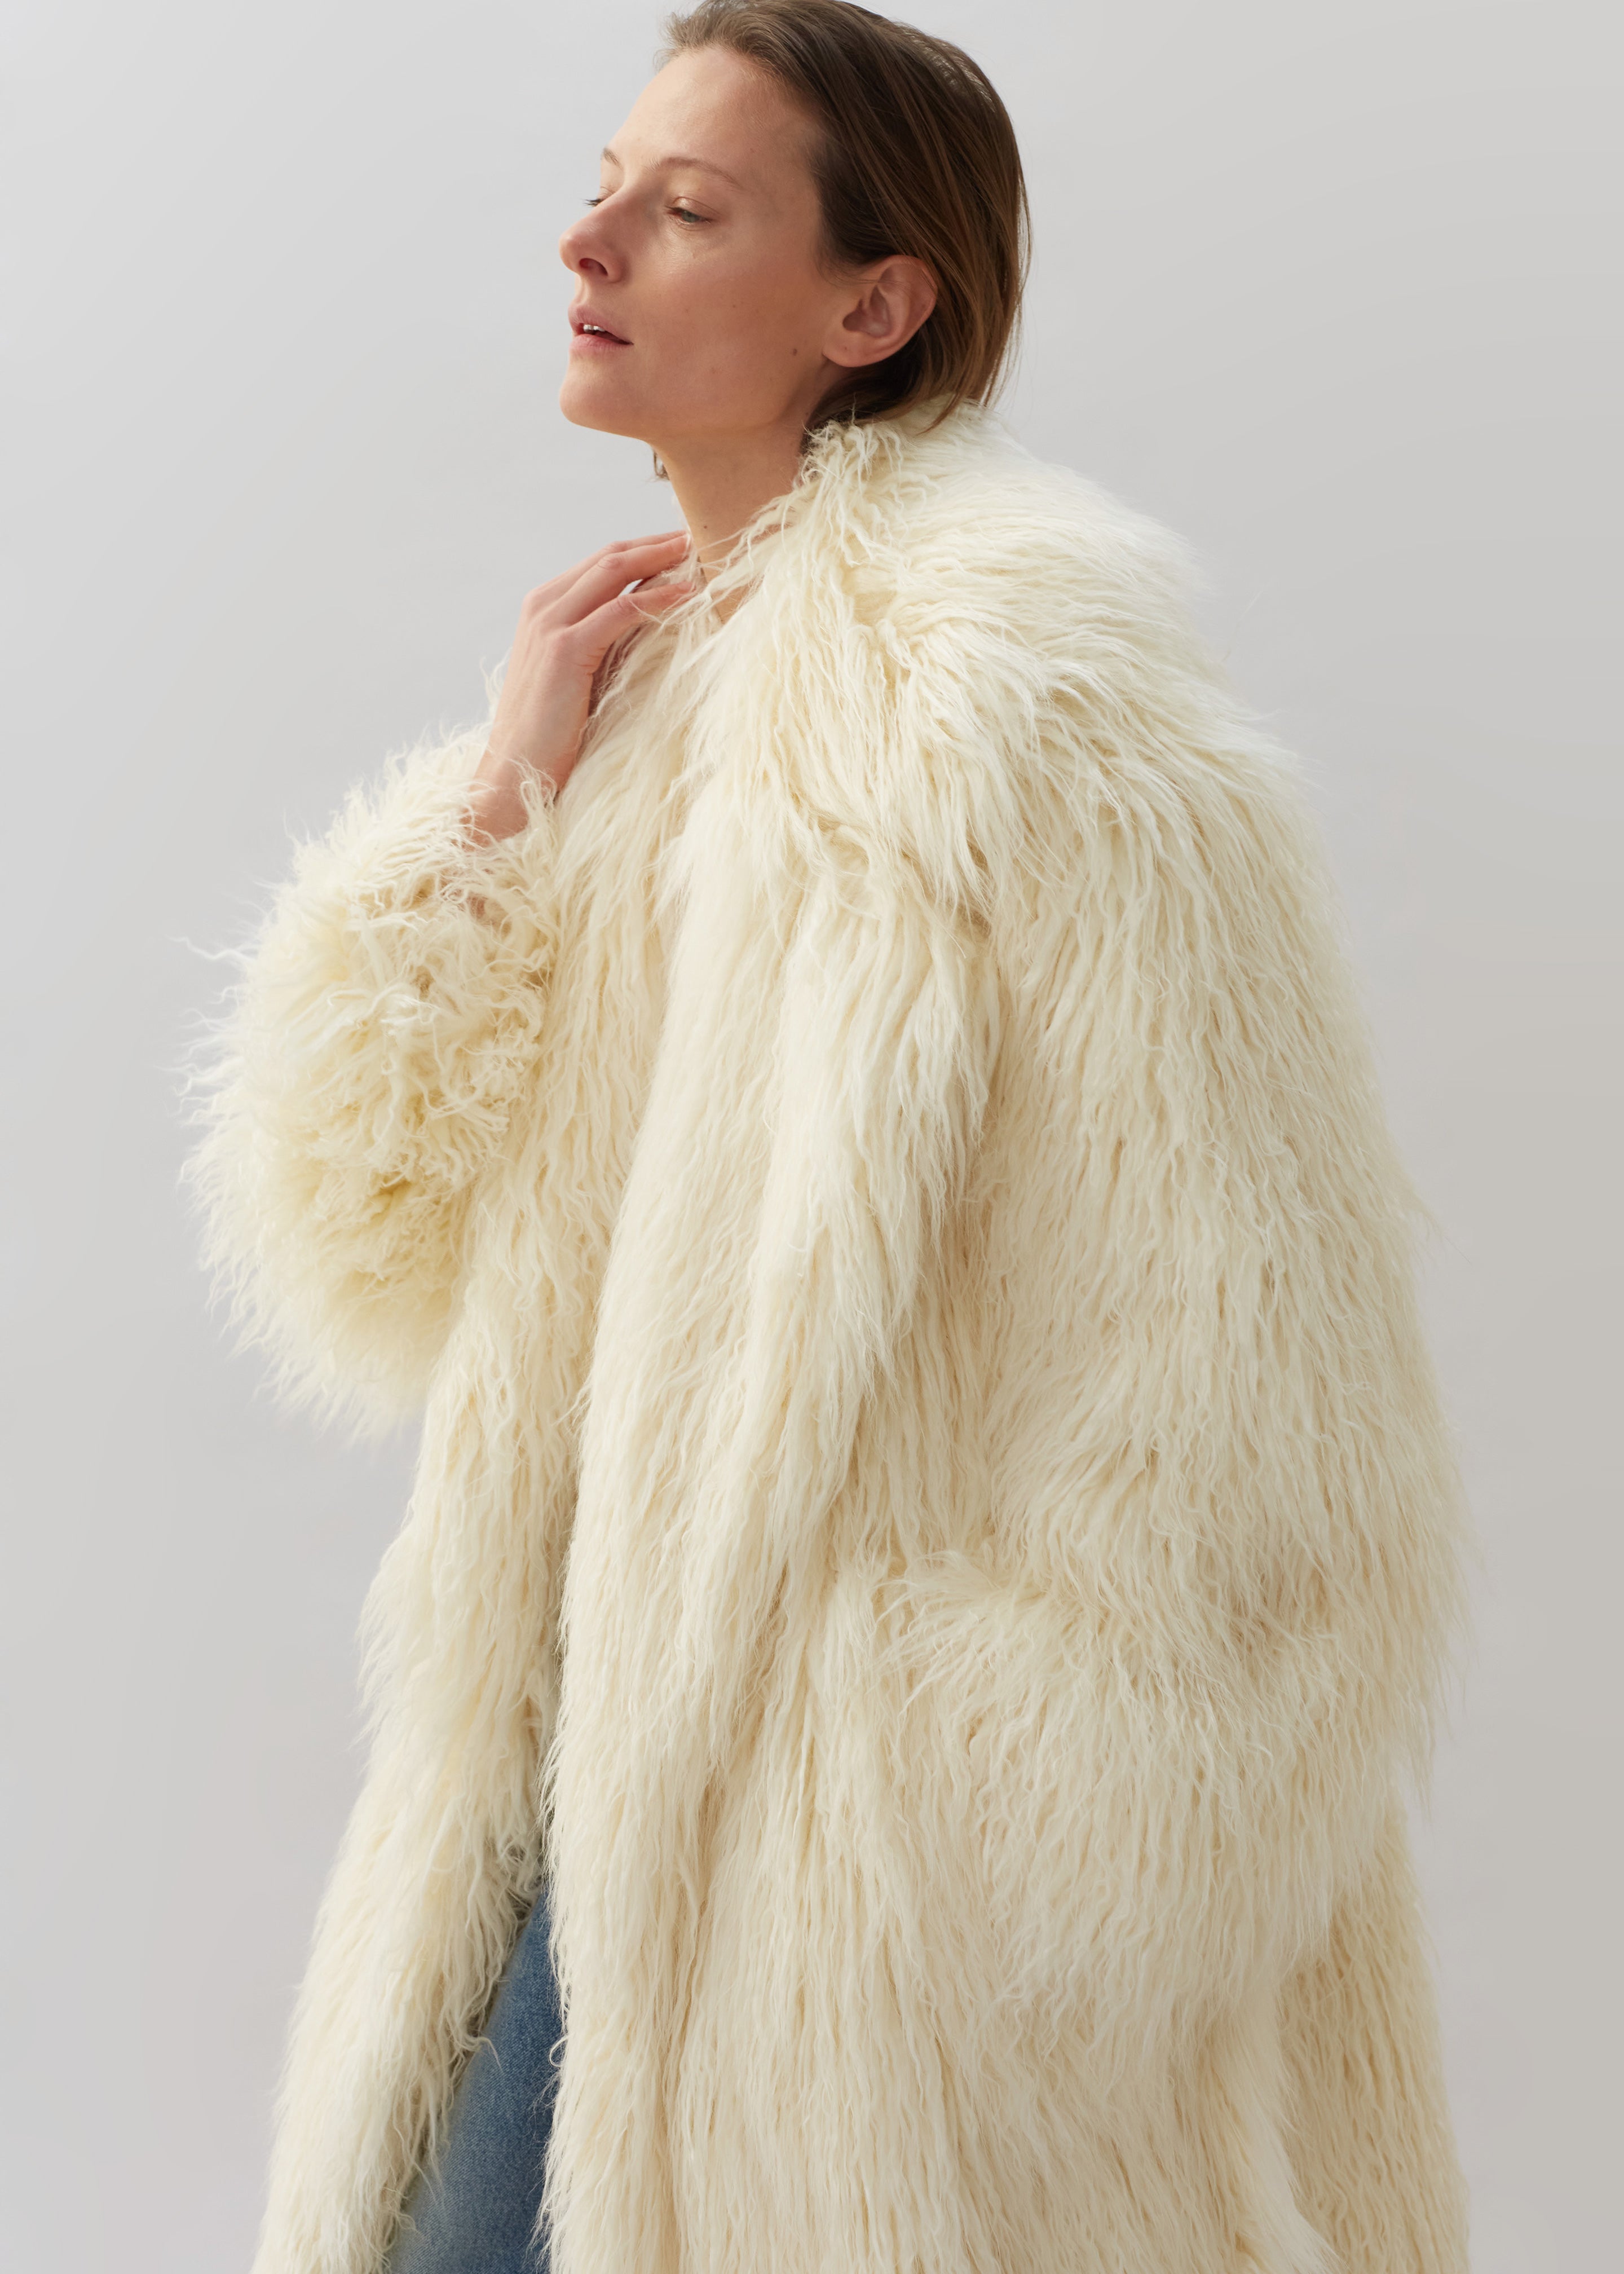 Nicole Long Faux Fur Coat - Off White - 3